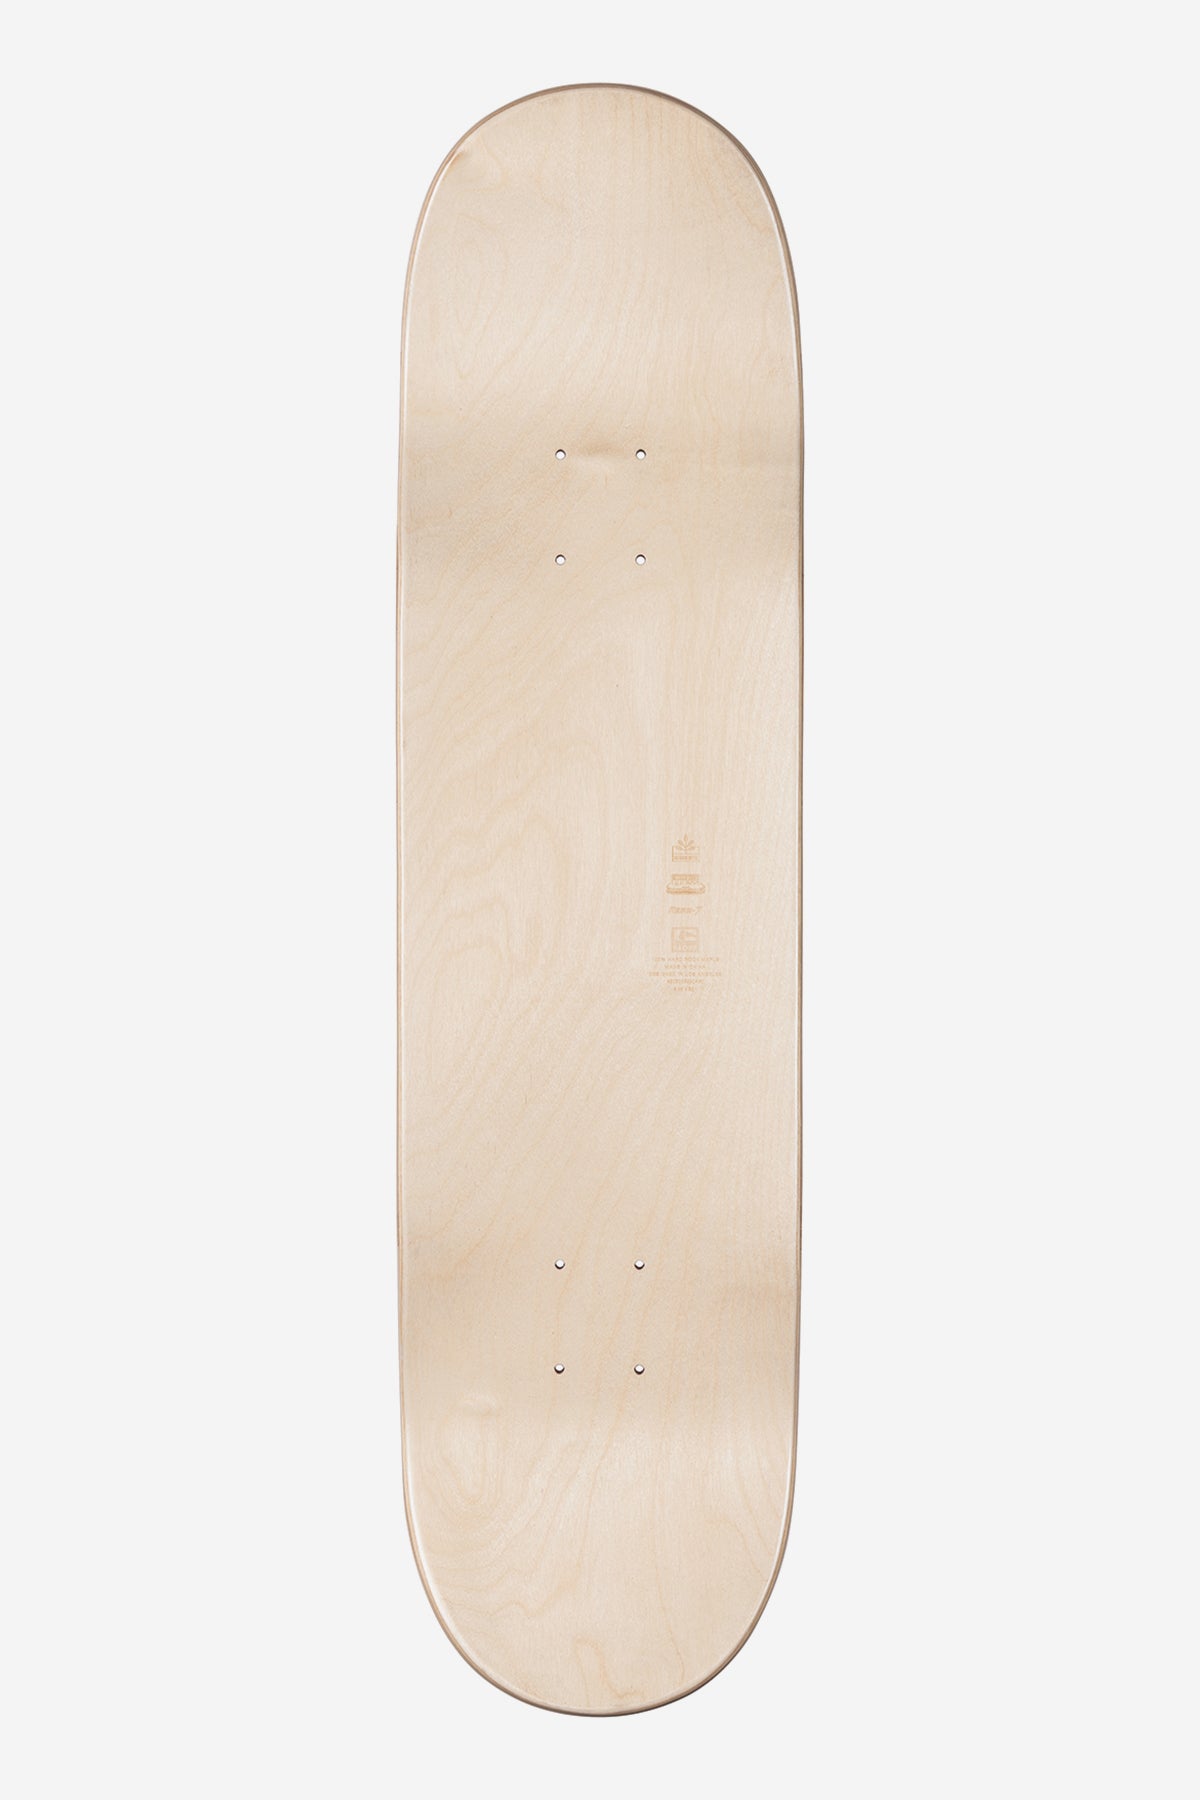 Globe - Goodstock - Off White- 8.0" (en anglais) Skateboard Deck